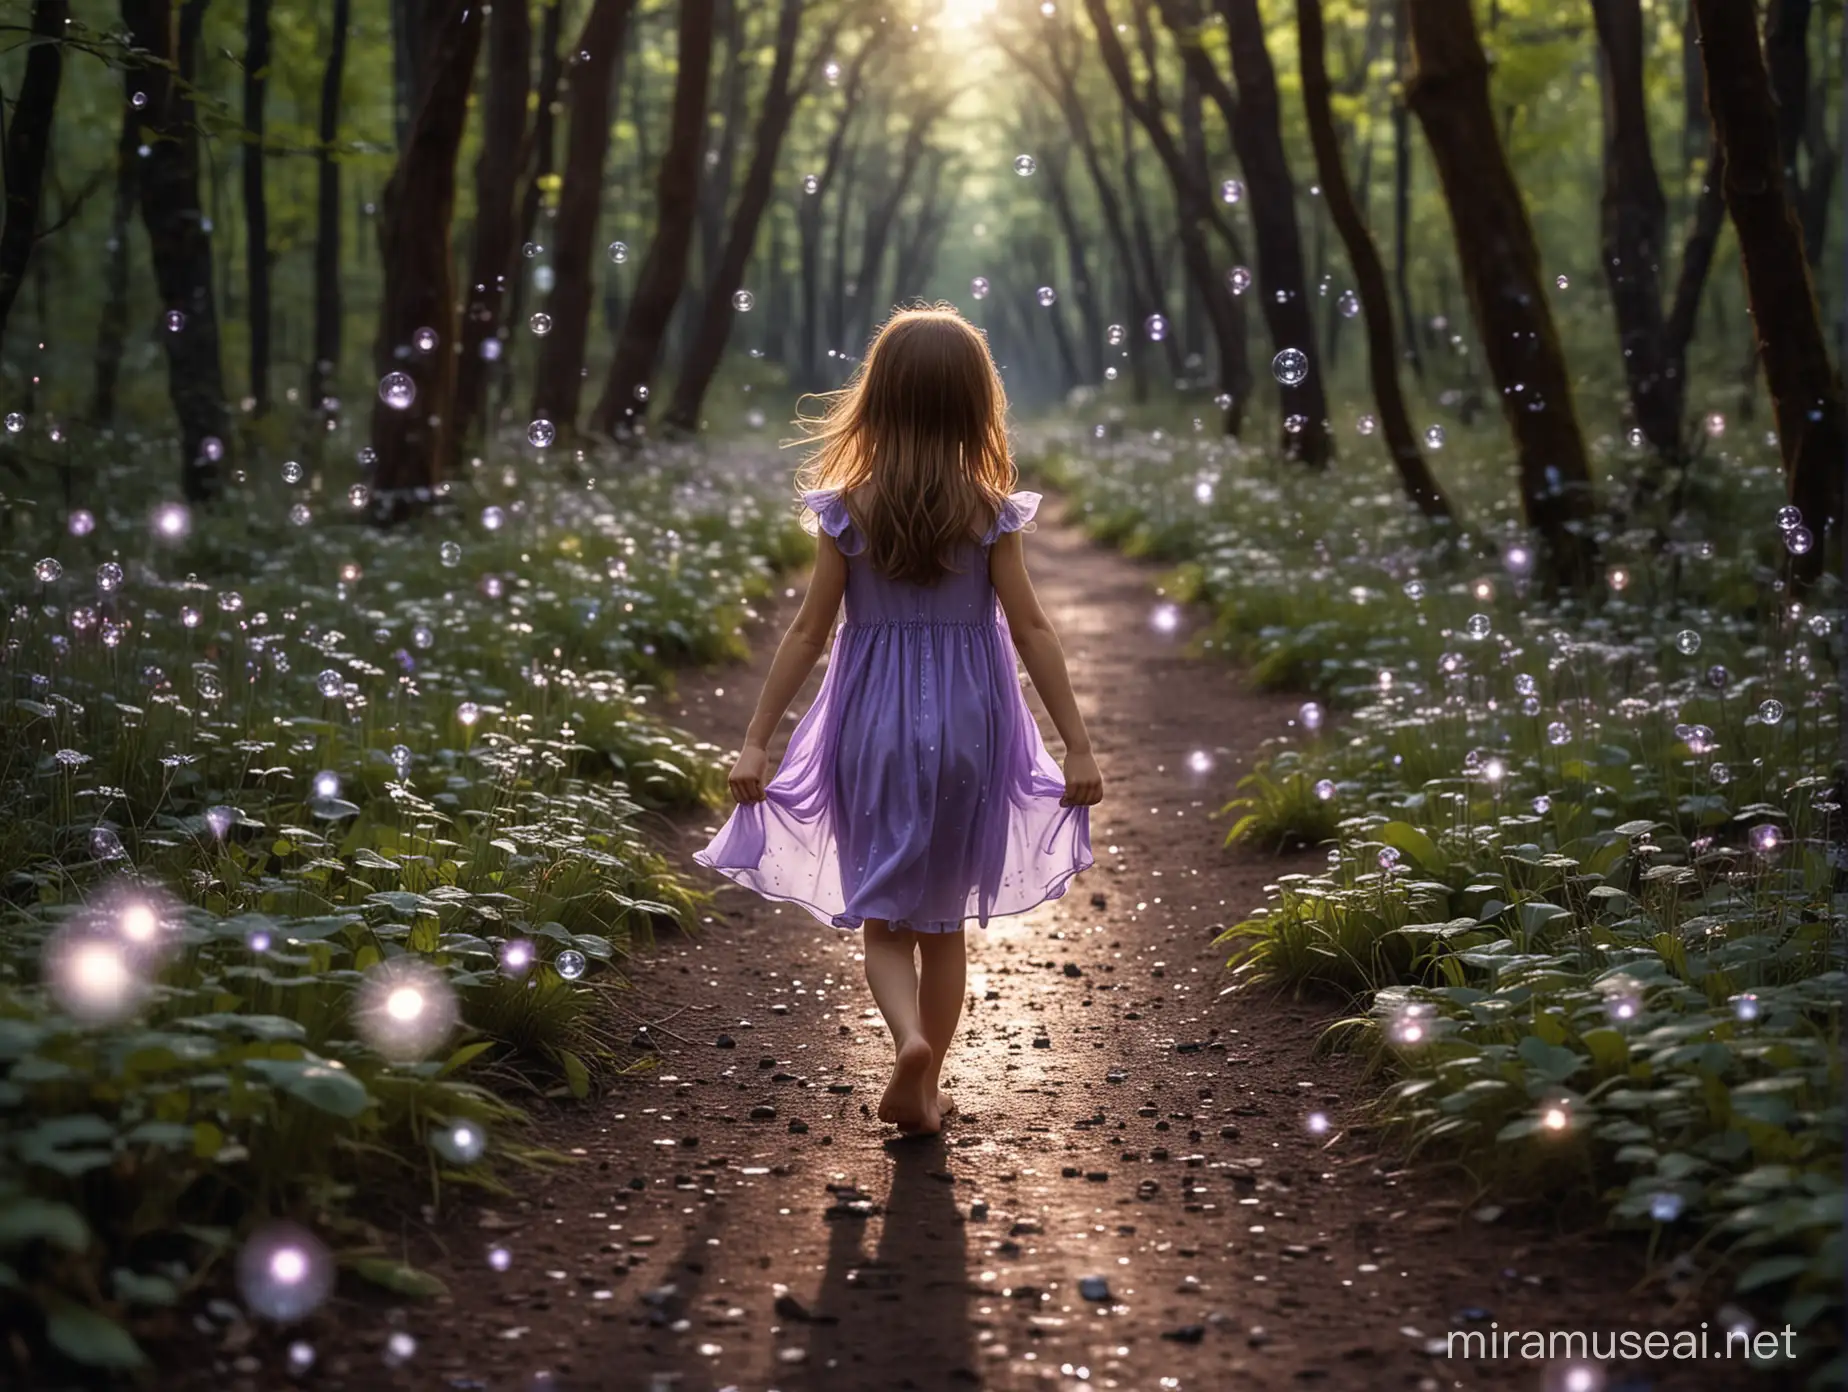 petite fille 6 ans, de dos, cheveux châtains, pieds nus, qui porte une robe violette très simple, sans manches, marche dans une forêt magique, féérique. Ambiance sombre avec des bulles lumineuses qui volent partout. Autour d'elle il y a des minuscules fées blanches qui volent